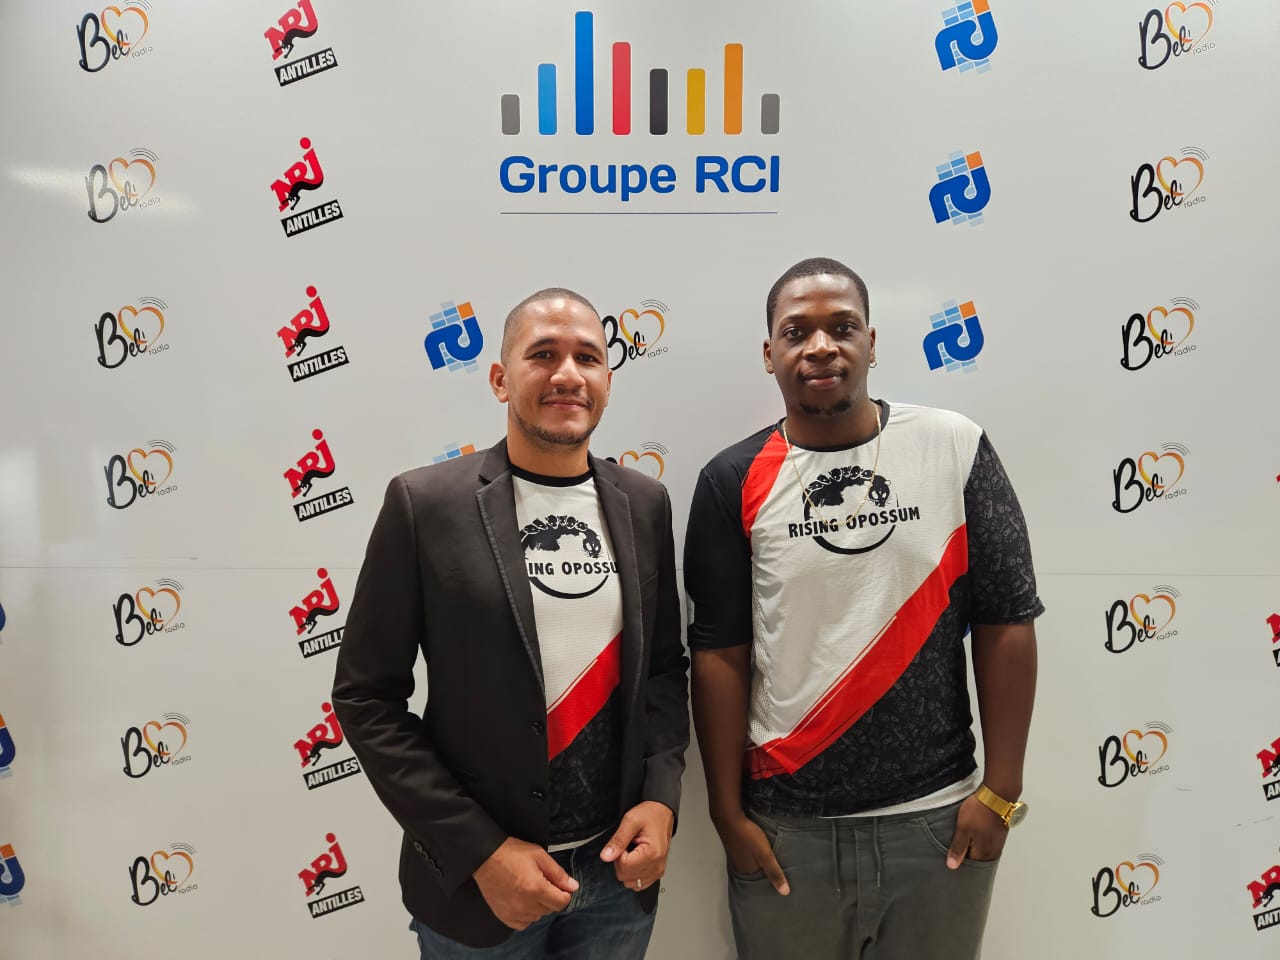     [Audio] Un Martiniquais sur le chemin des championnats du monde de jeux vidéos

